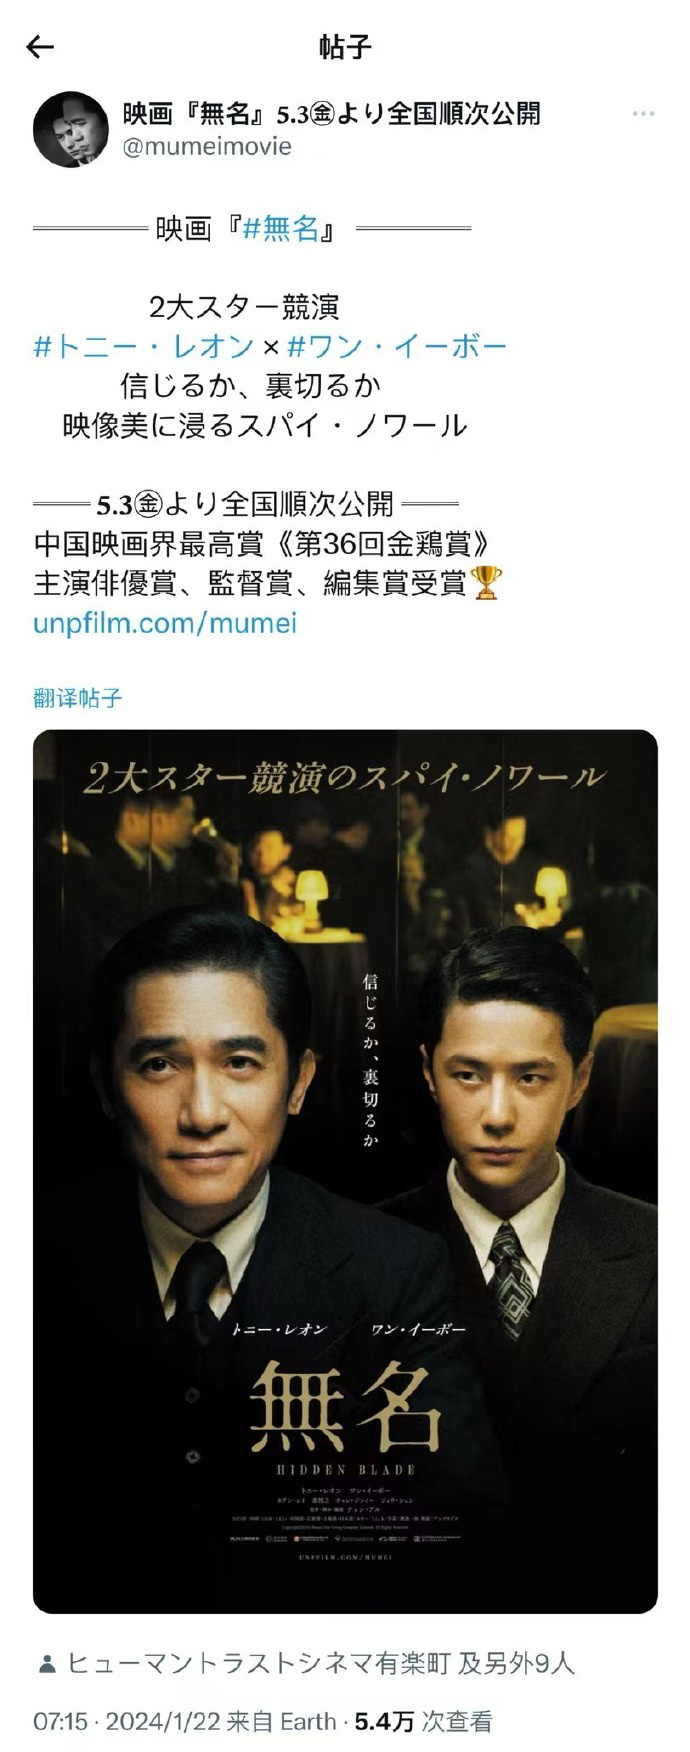 《无名》将于5月3日在日本上映 梁朝伟与王一博合作亮相